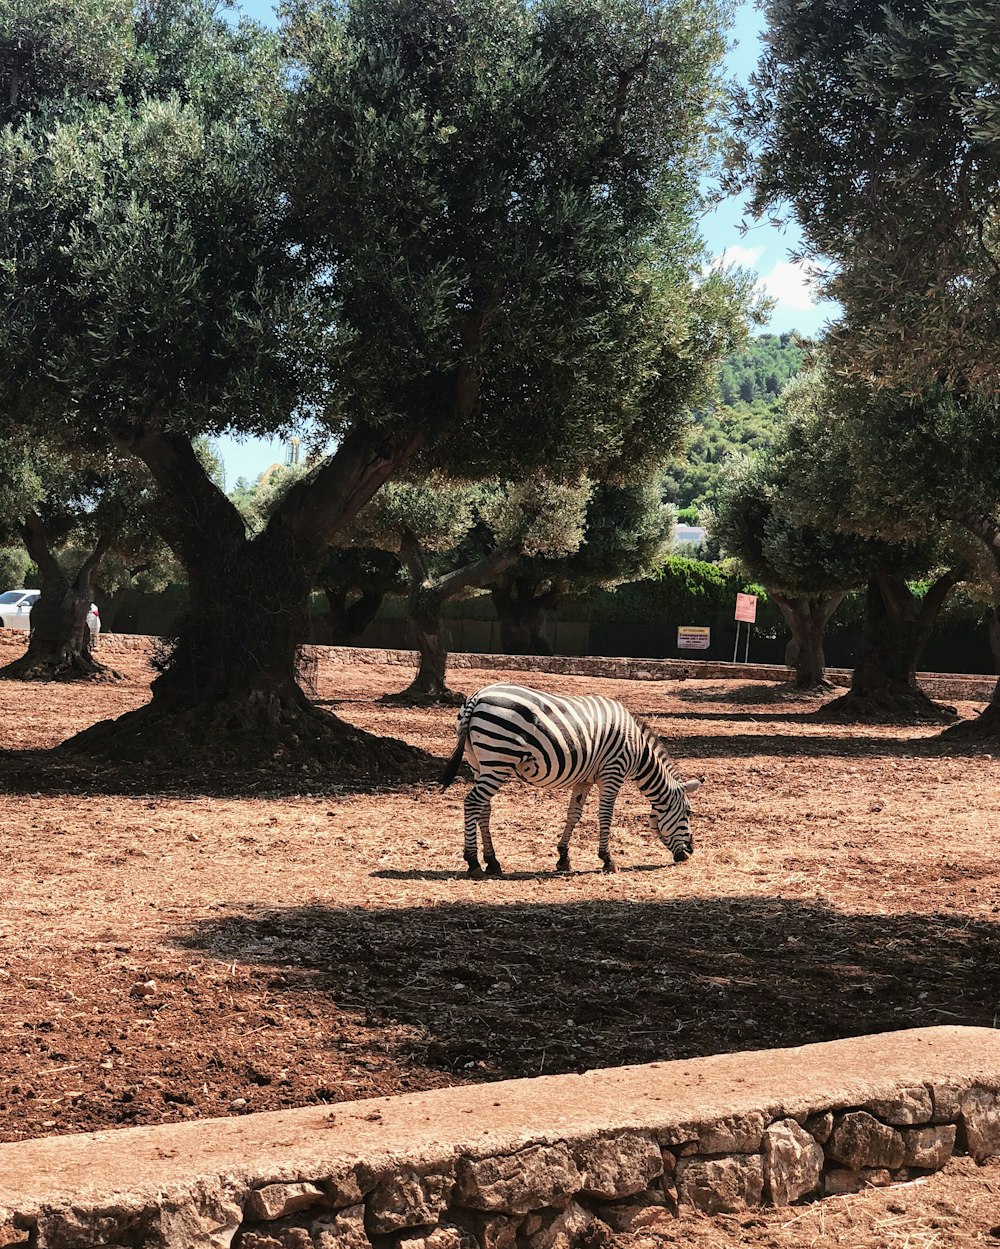 zebra standing on brown soil near green trees during daytime